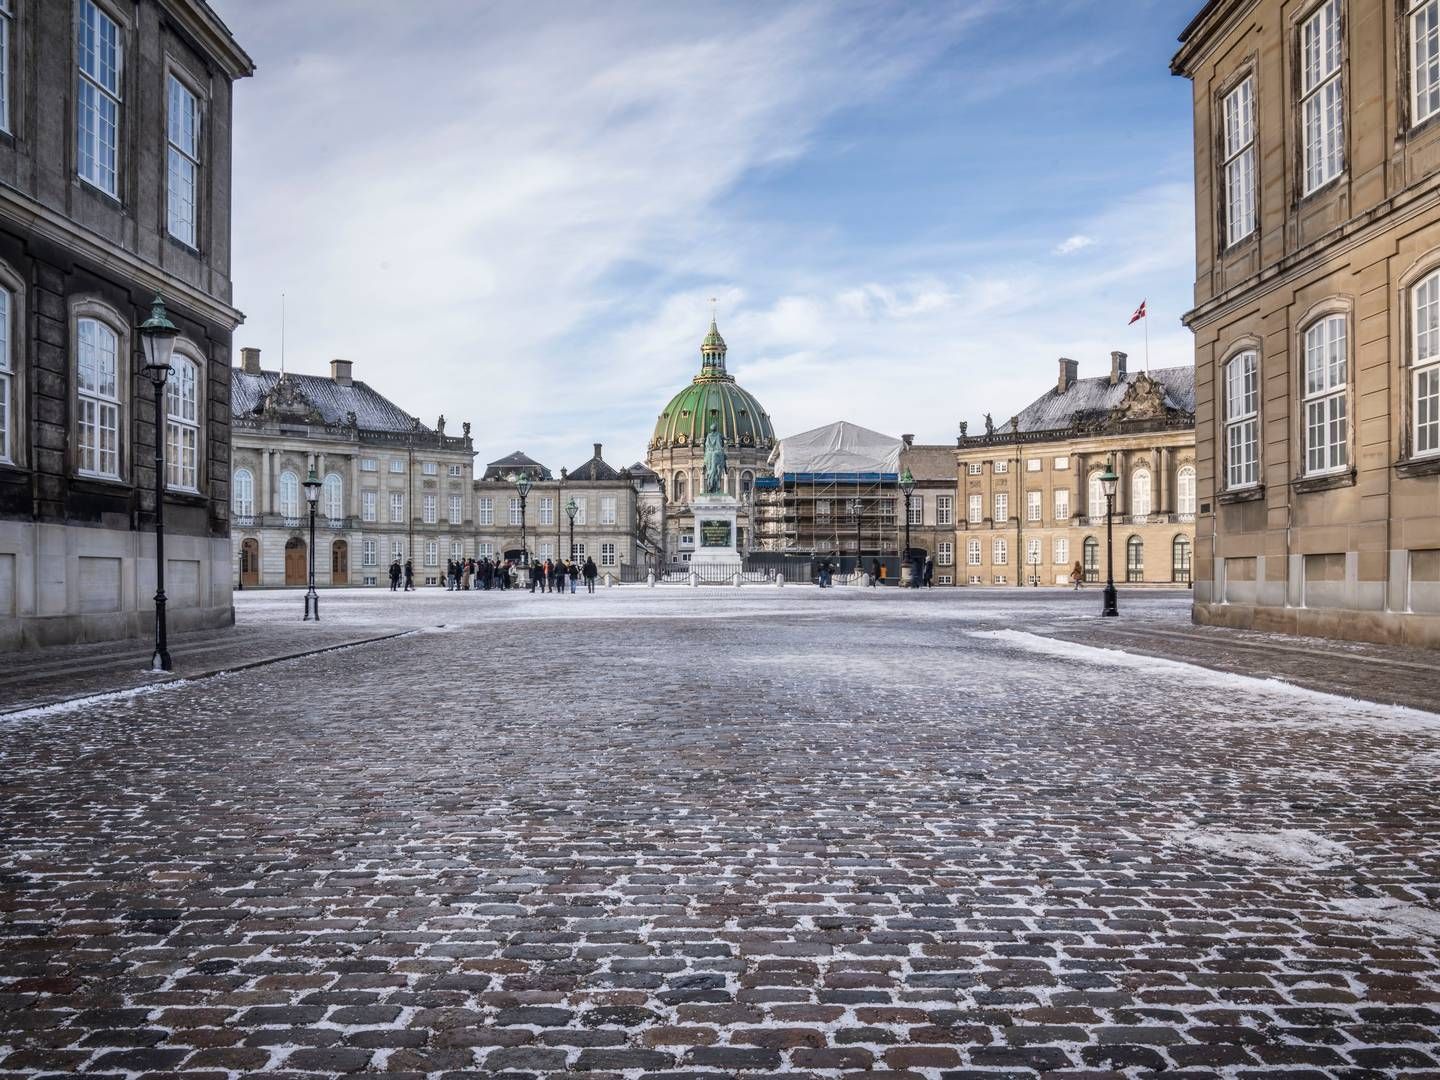 Danders & More holder til et solidt stenkast fra Amalienborg i København. | Foto: Thomas Traasdahl